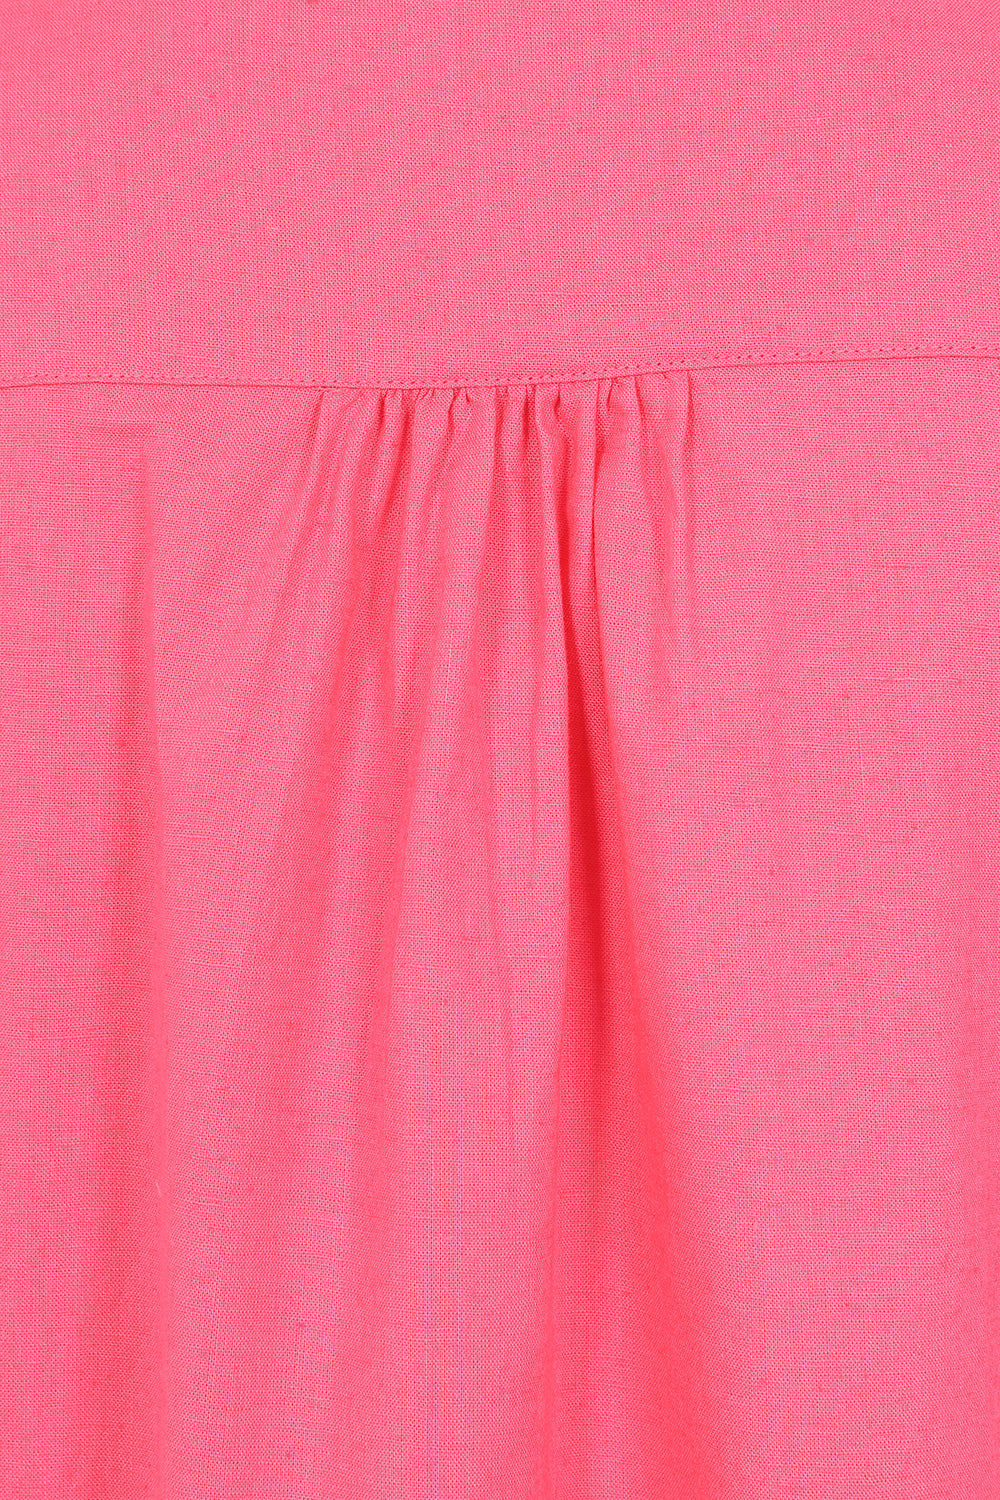 Summertime Smock - Pink - Organic Cotton Linen Blend